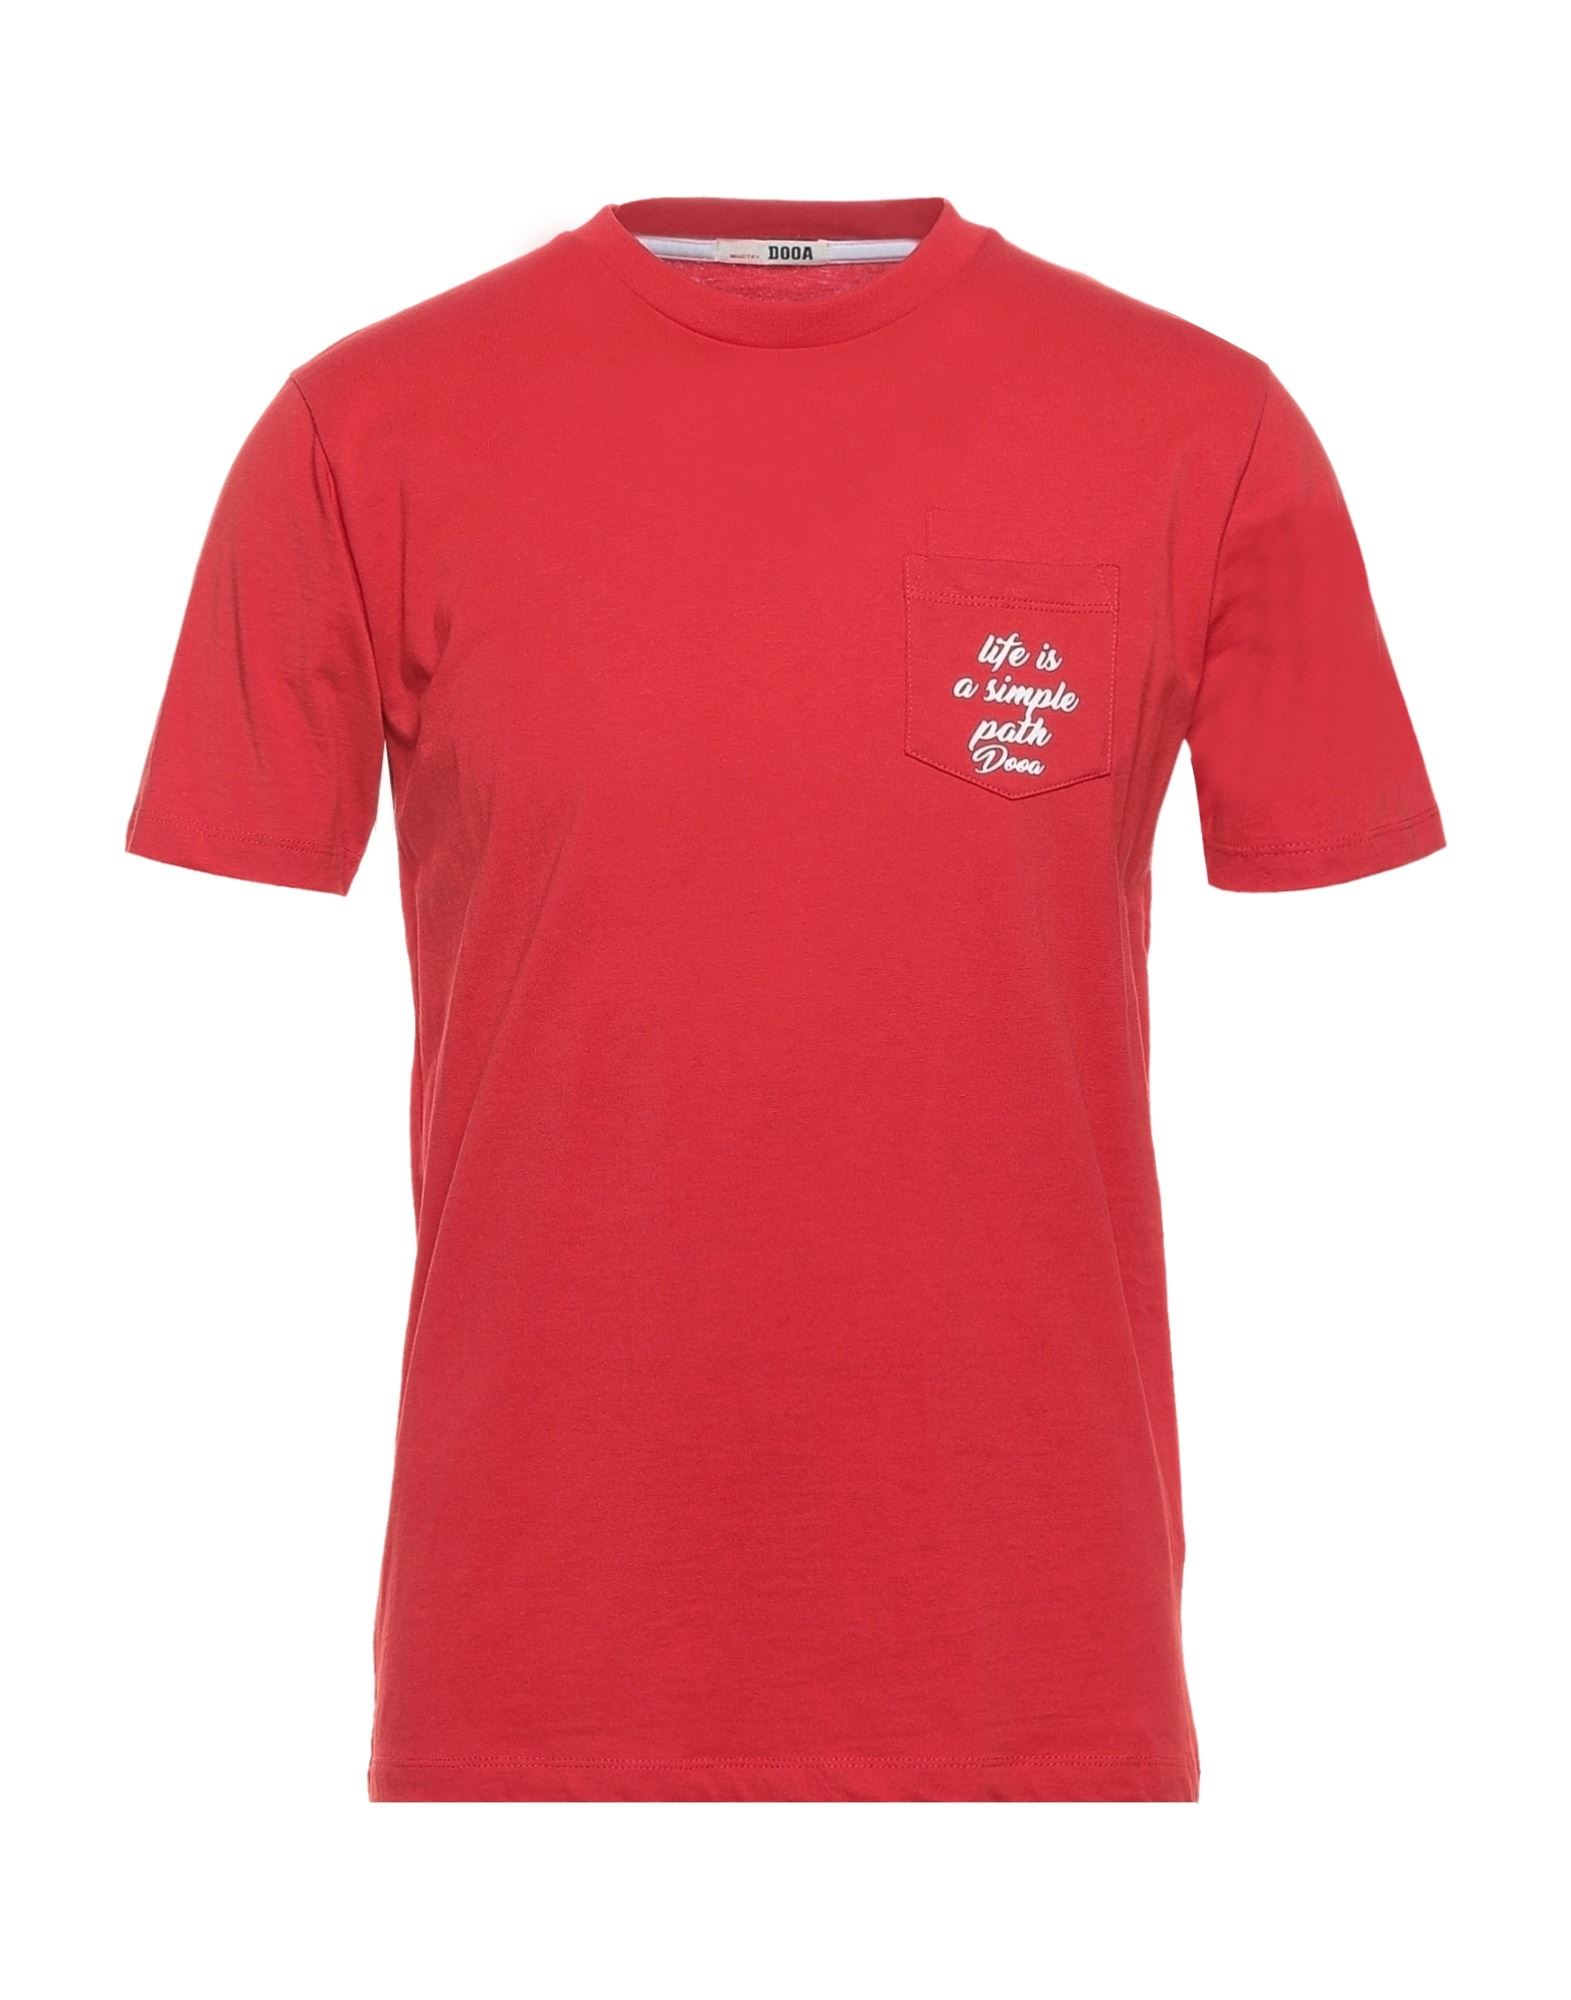 DOOA T-shirts Herren Rot von DOOA